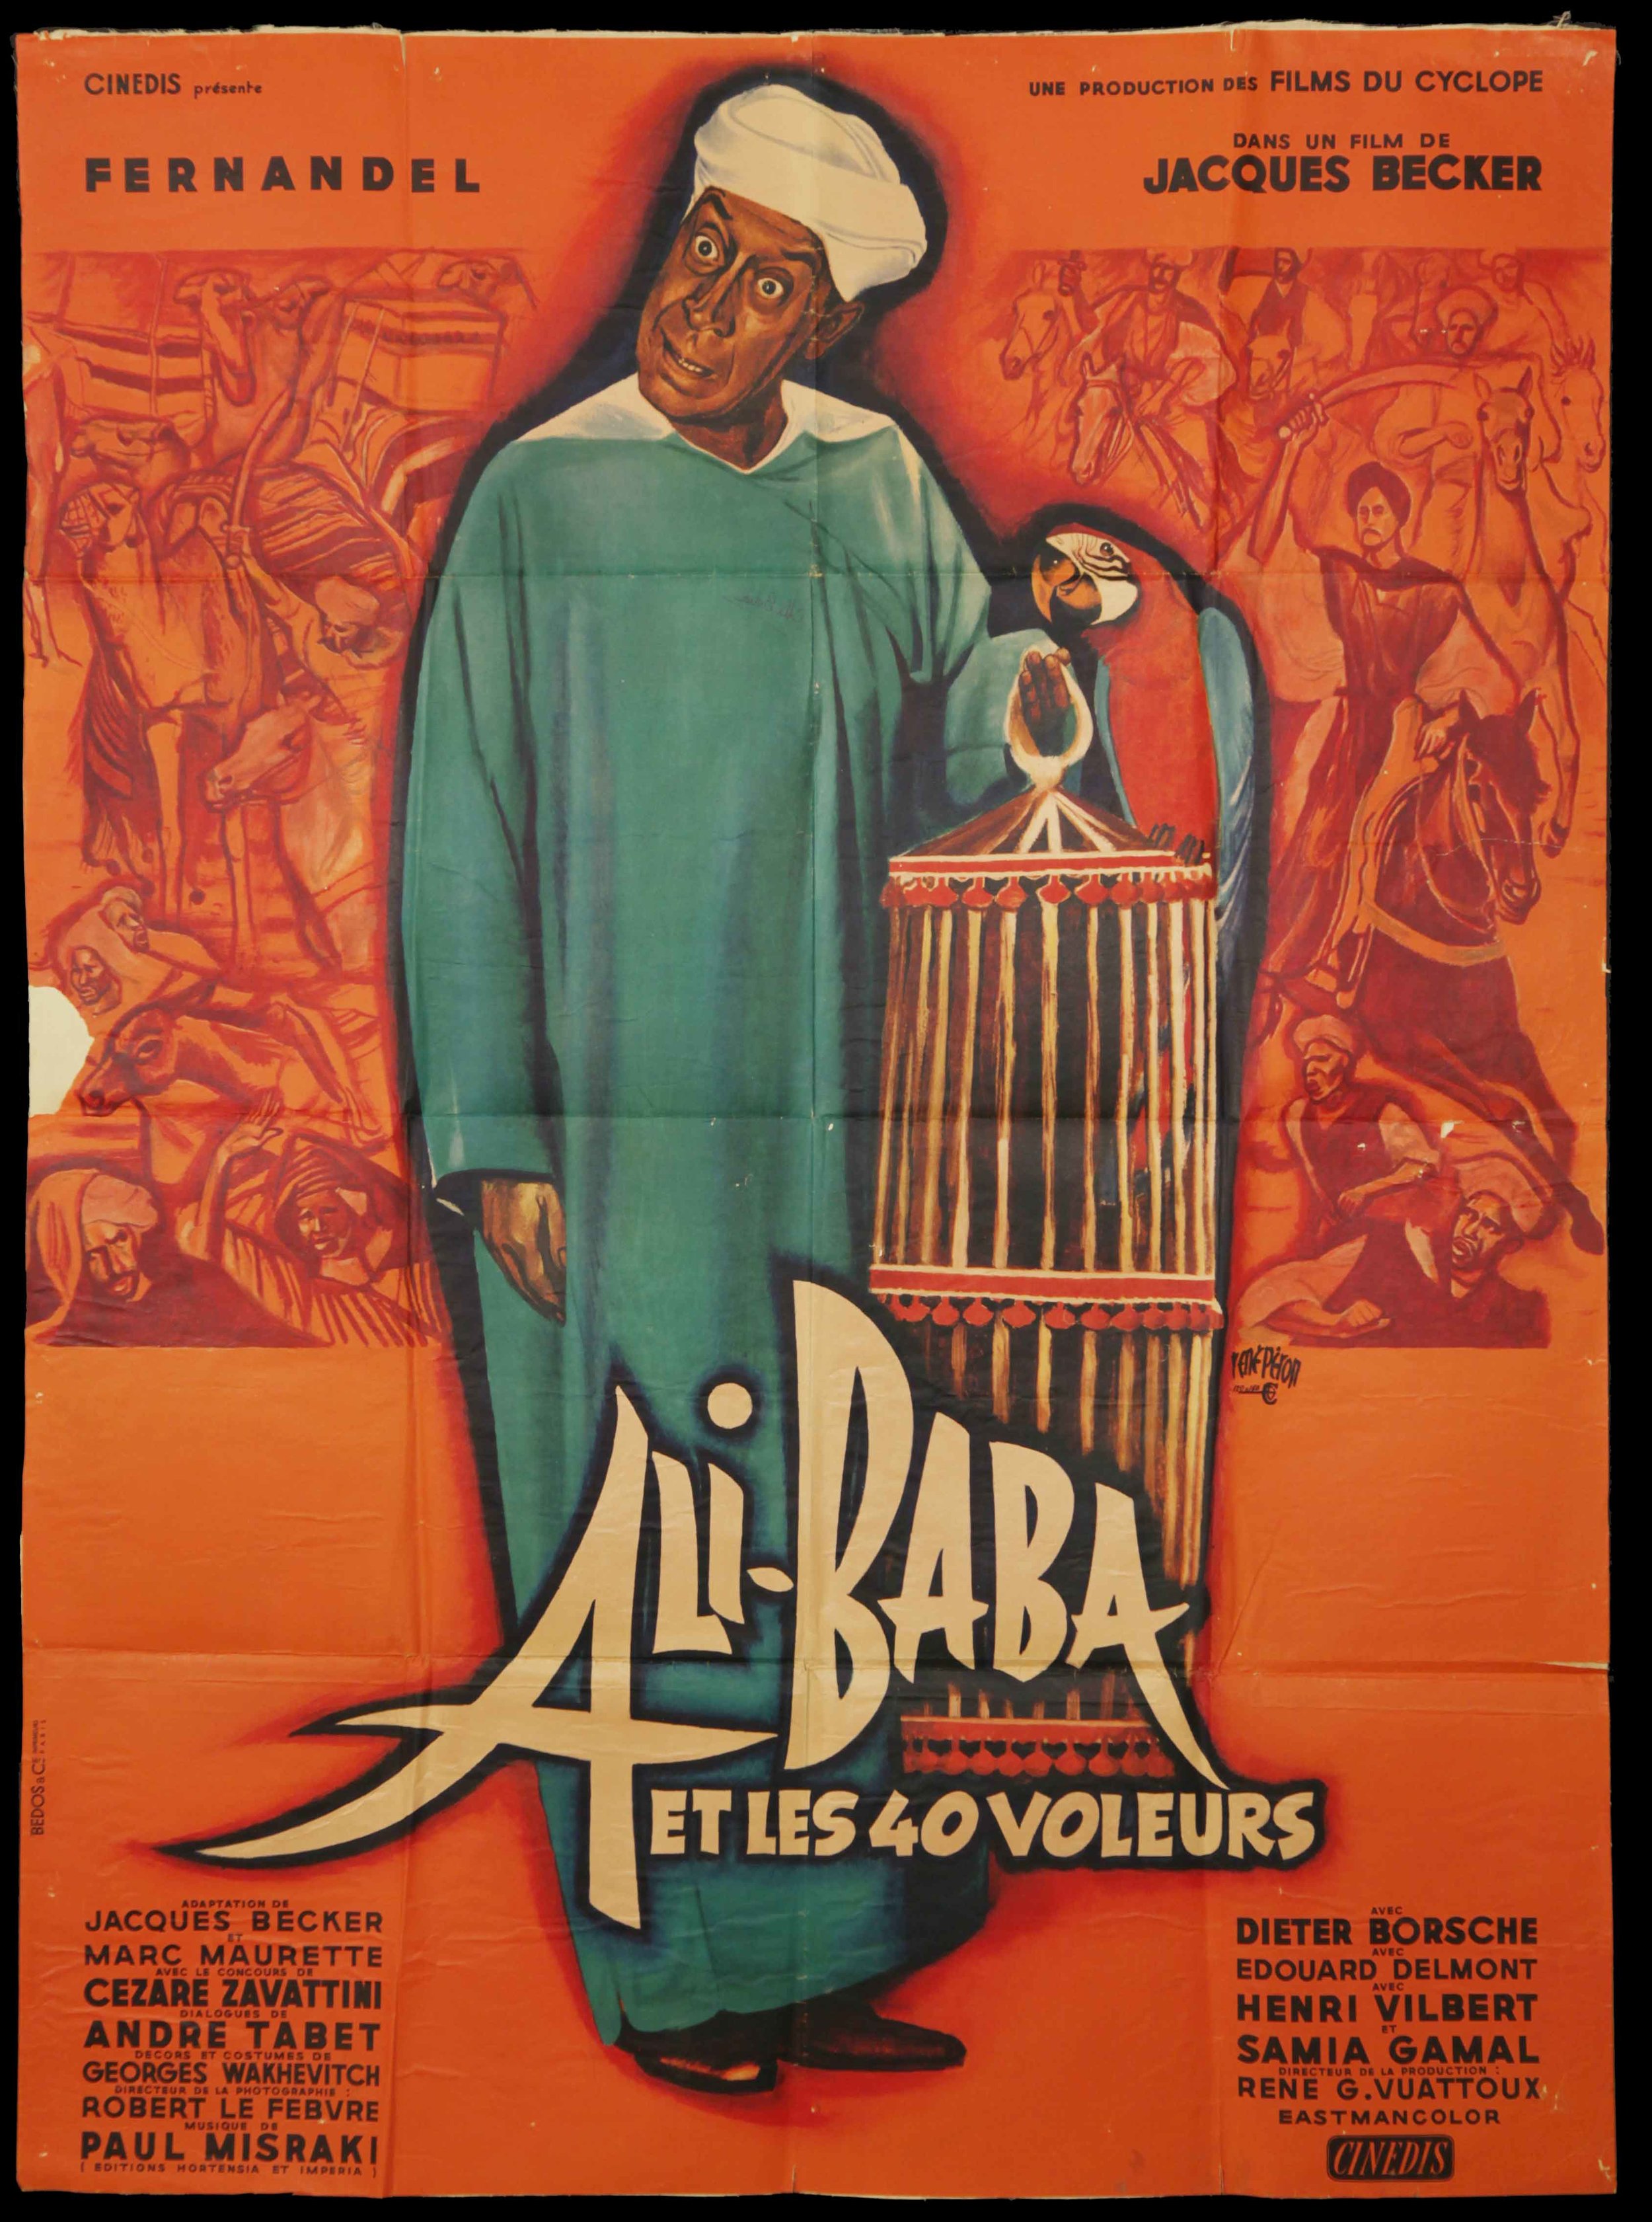 Fernadel in "Ali Baba Et les Voileurs" (1954)